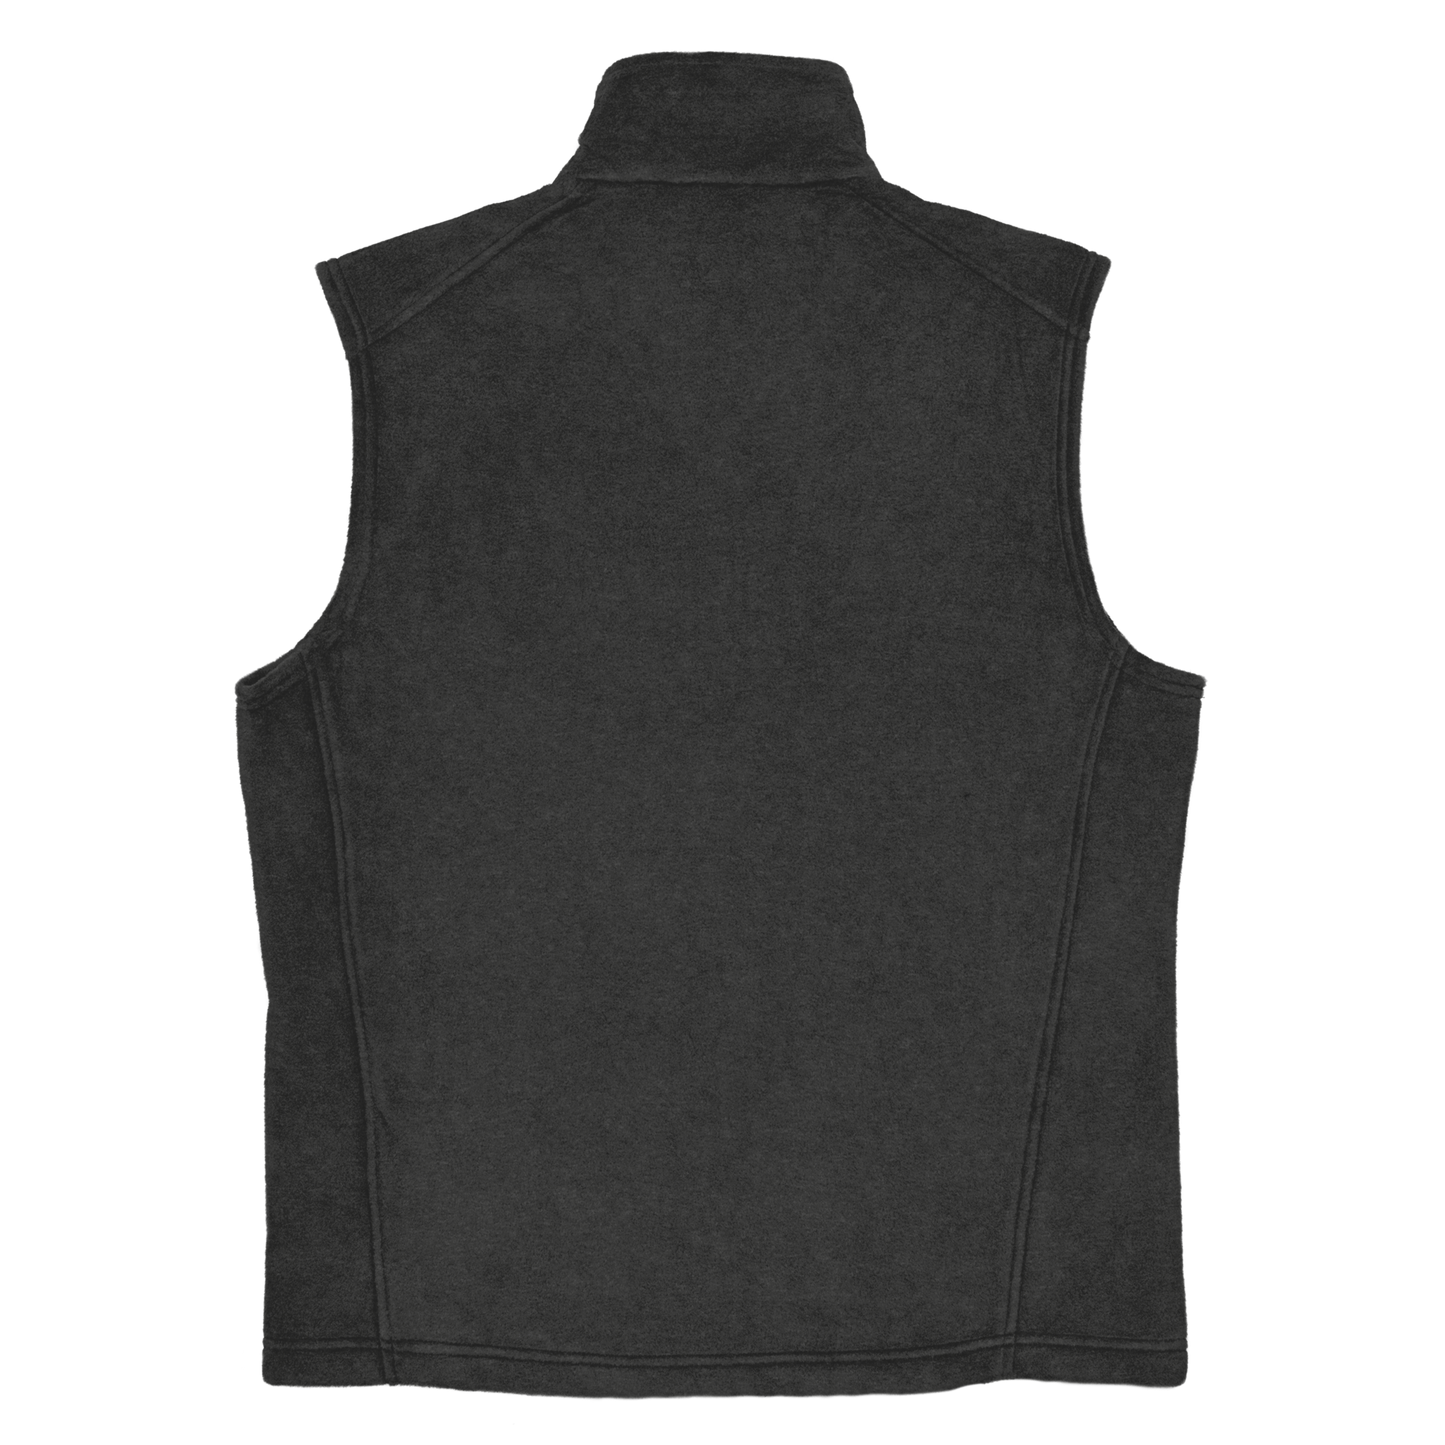 NPI STAPLE - UNISEX Columbia fleece vest